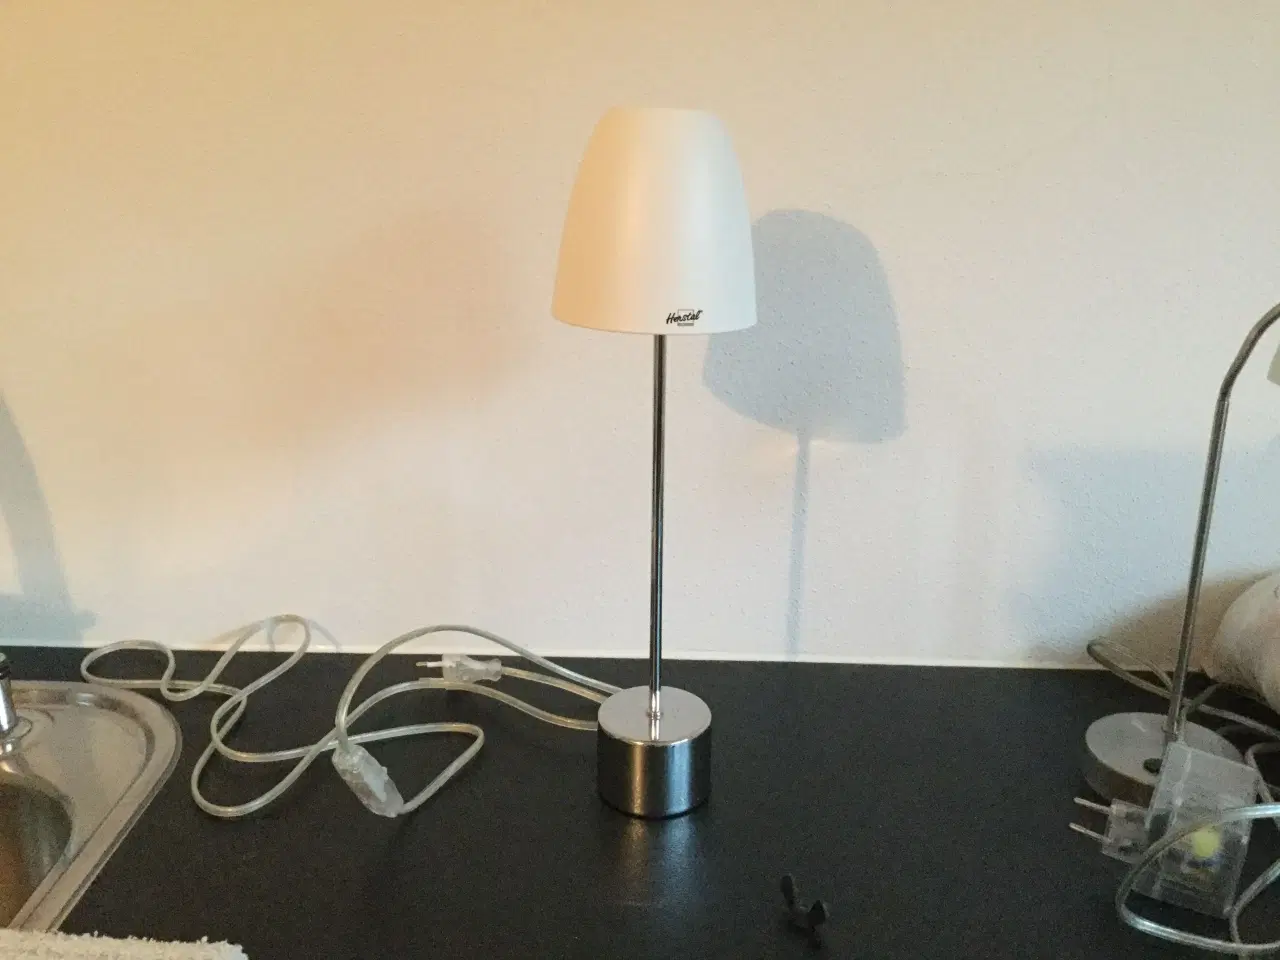 Billede 1 - 3 Herstal halogen spot bord lamper 